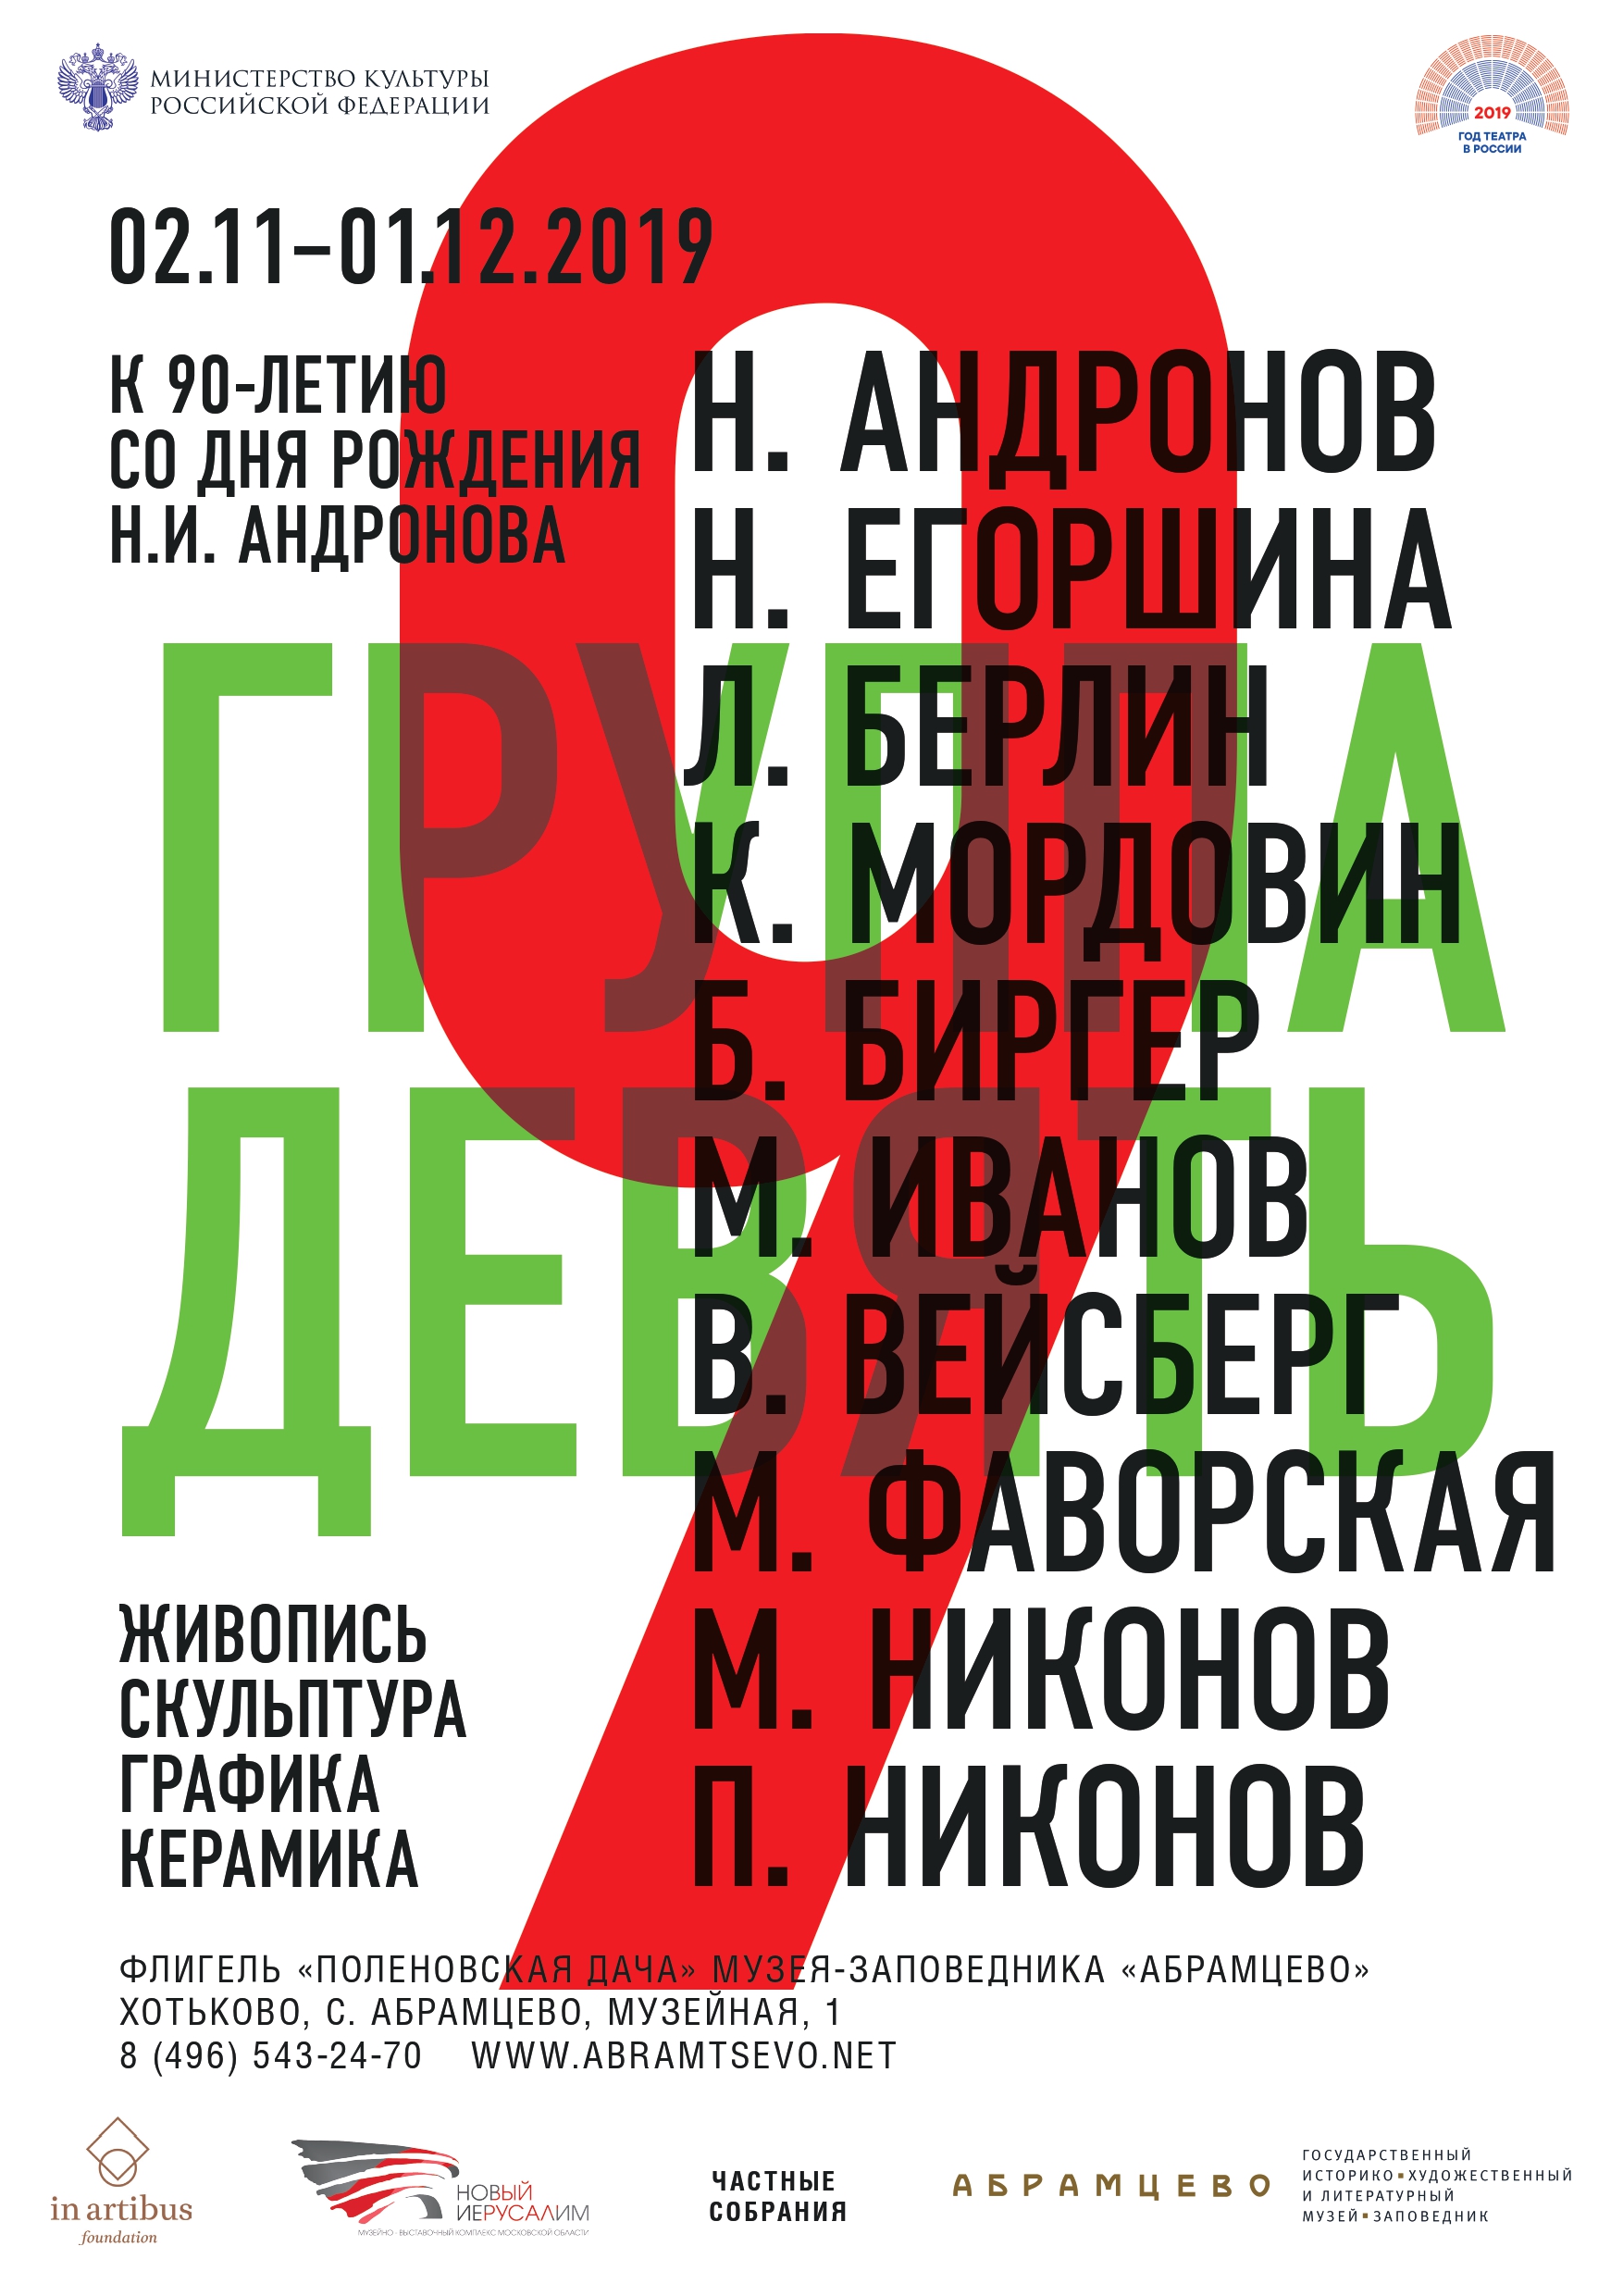 Ukrainian alphabet lore opposite sounds effects (Я-A) 